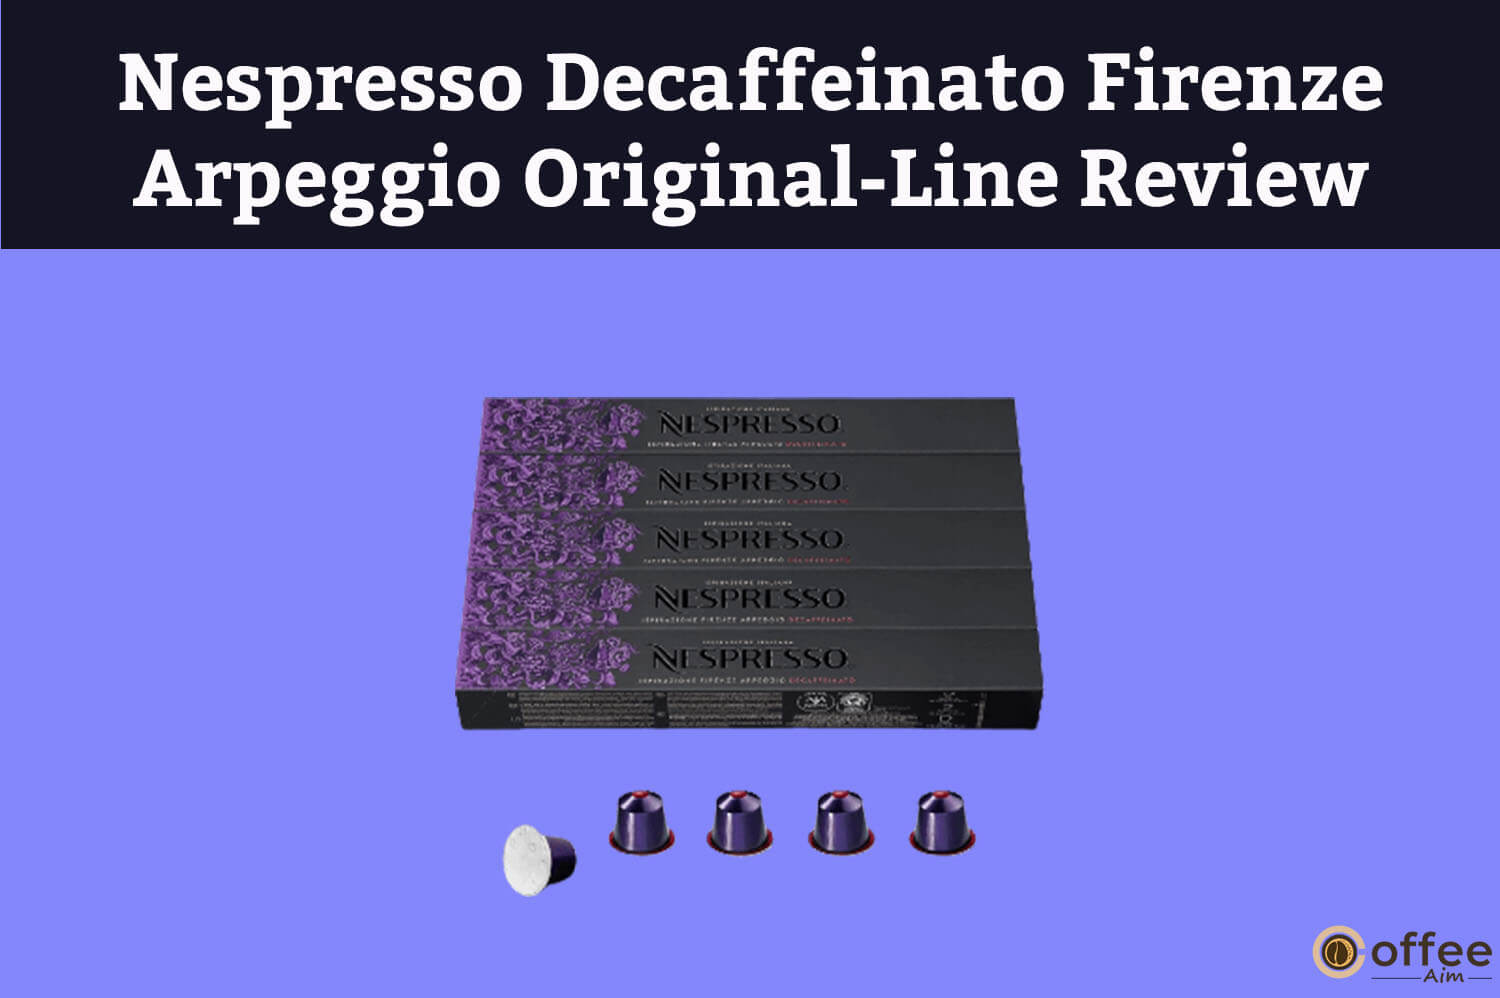 Featured image for the article "Nespresso Decaffeinato Firenze Arpeggio Original-Line Review"